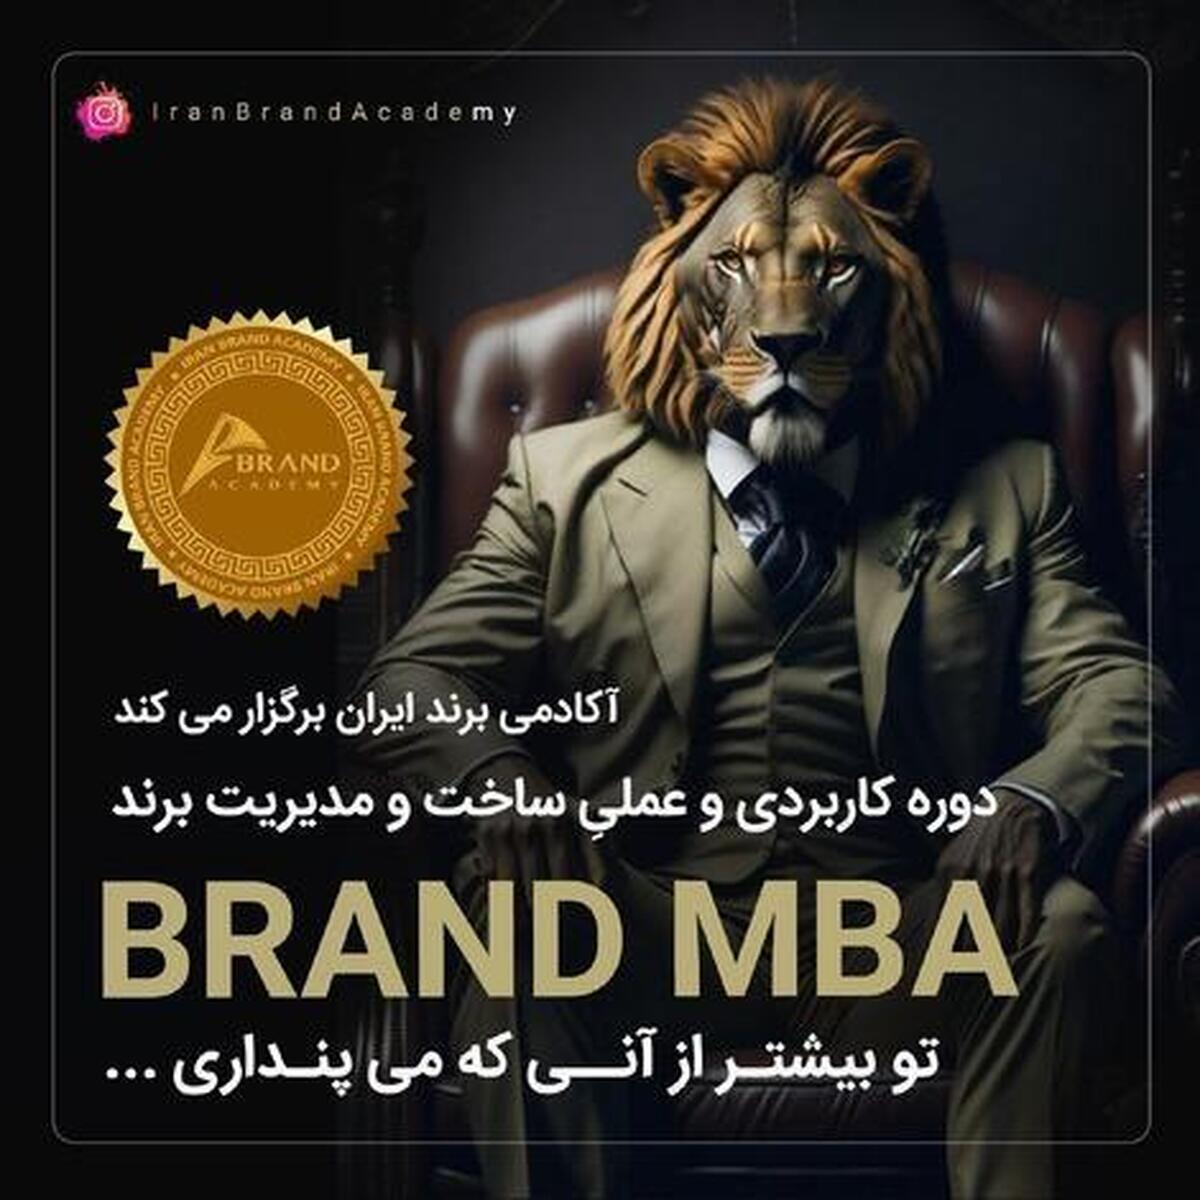 آغاز بیست و چهارمین دوره ساخت و مدیریت برند Brand MBA